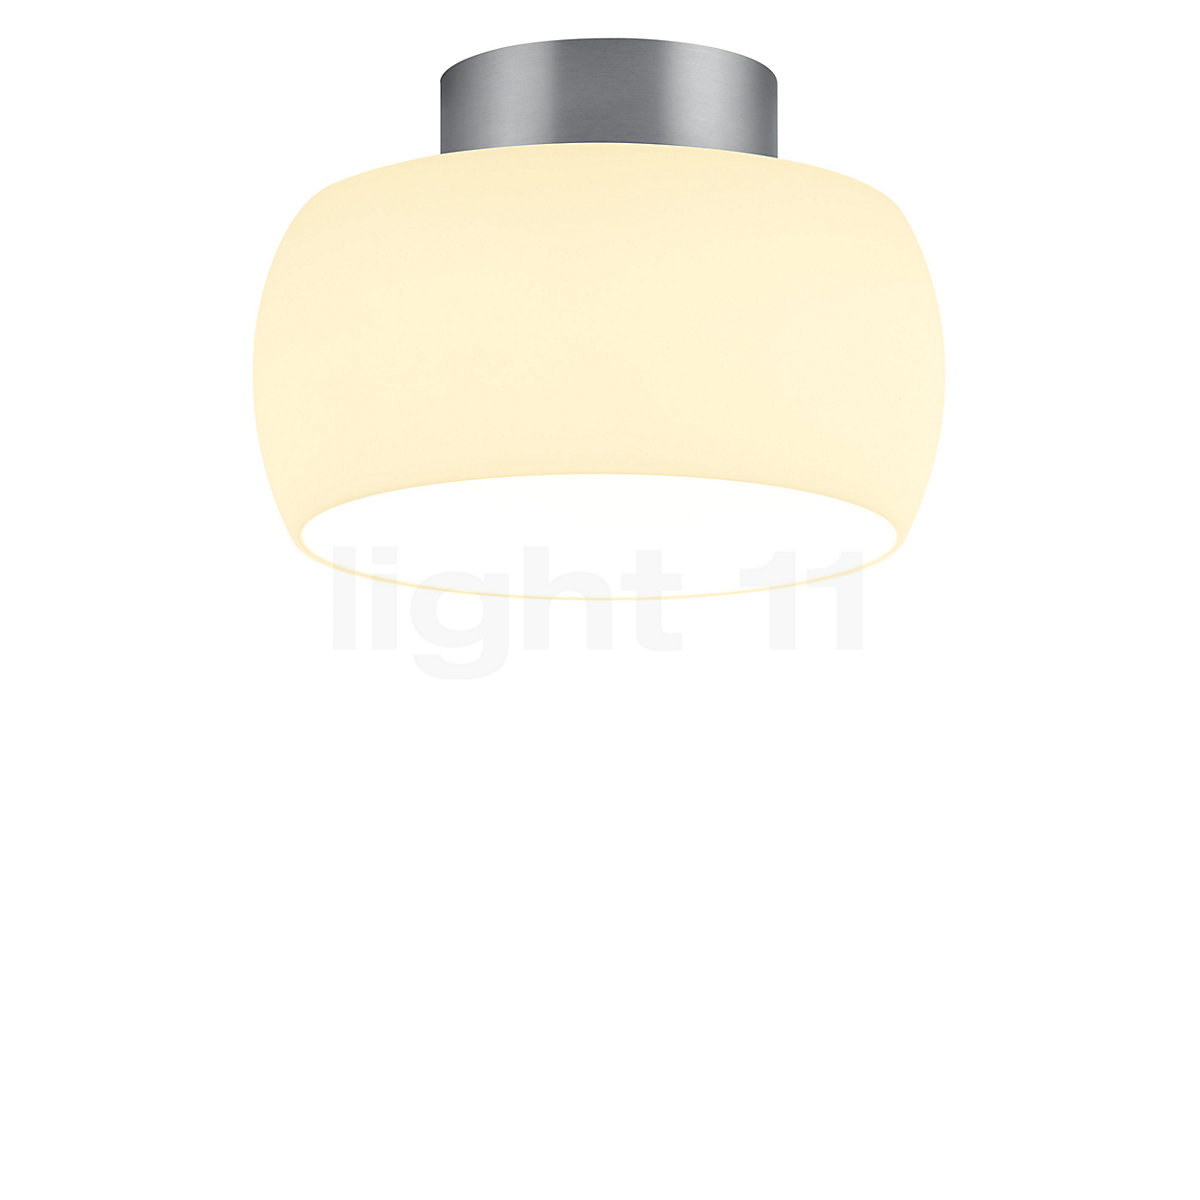 ganske enkelt Borgerskab sommer Buy Bankamp Bell Ceiling Light LED at light11.eu